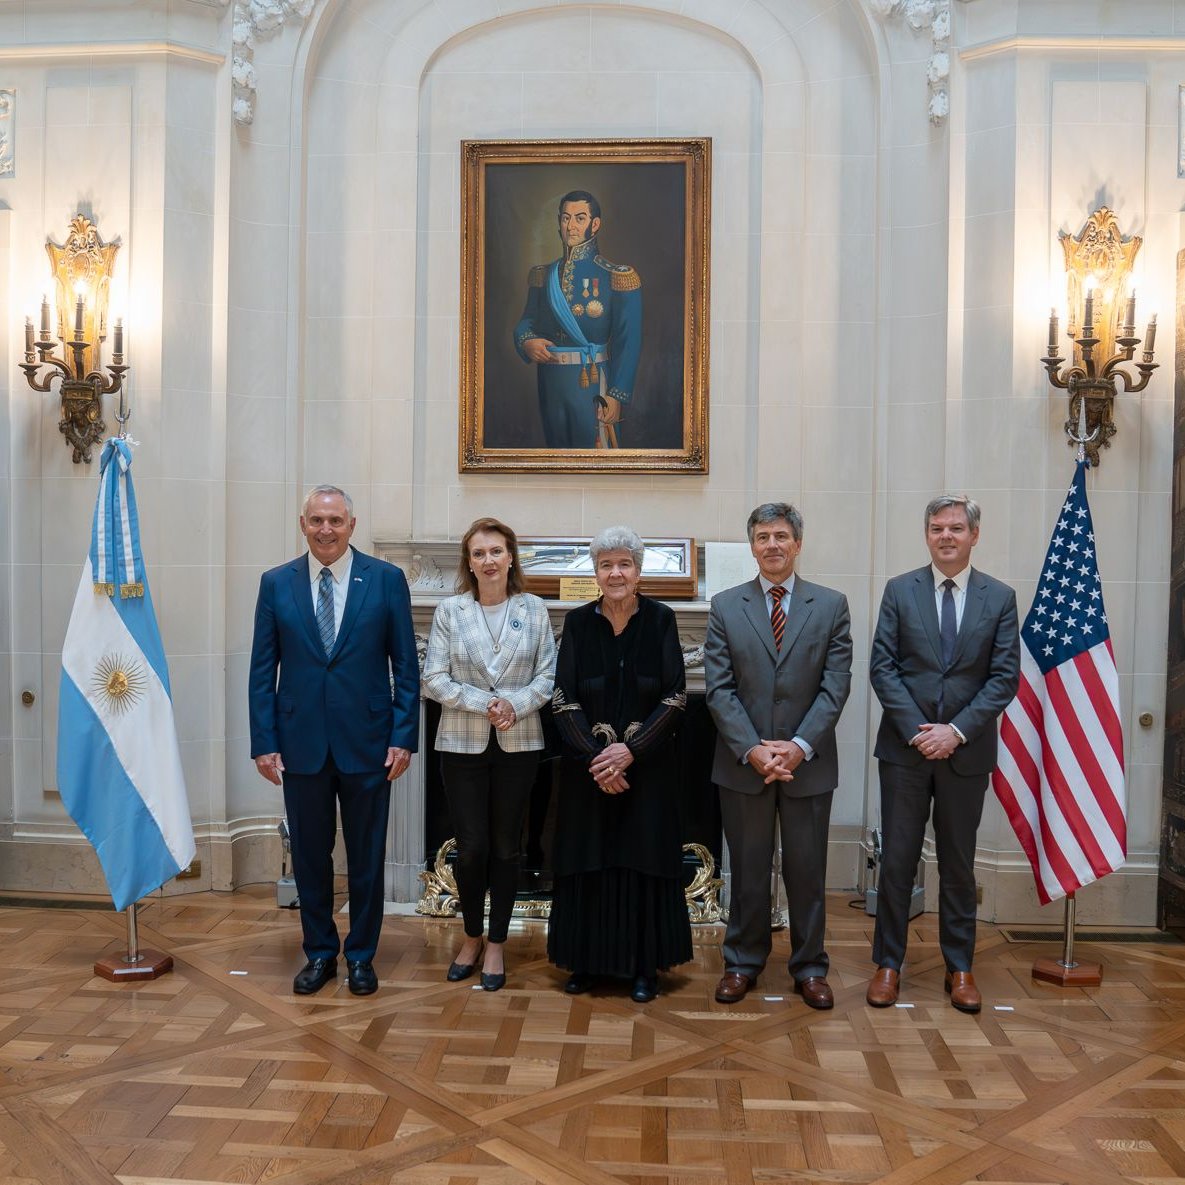 La relación comercial entre EEUU y Argentina tiene un gran potencial de expansión. La subsecretaria de Comercio Internacional Marisa Lago y la ministra @DianaMondino exploraron posibles áreas de colaboración para incrementar el comercio bilateral.